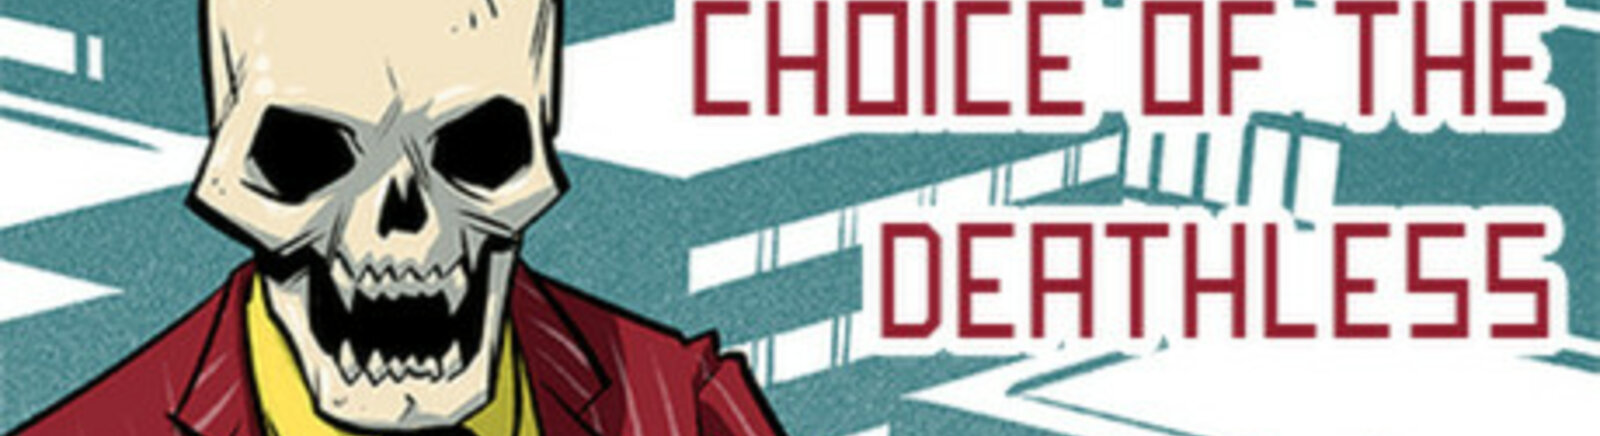 Дата выхода Choice of the Deathless  на PC, iOS и Android в России и во всем мире